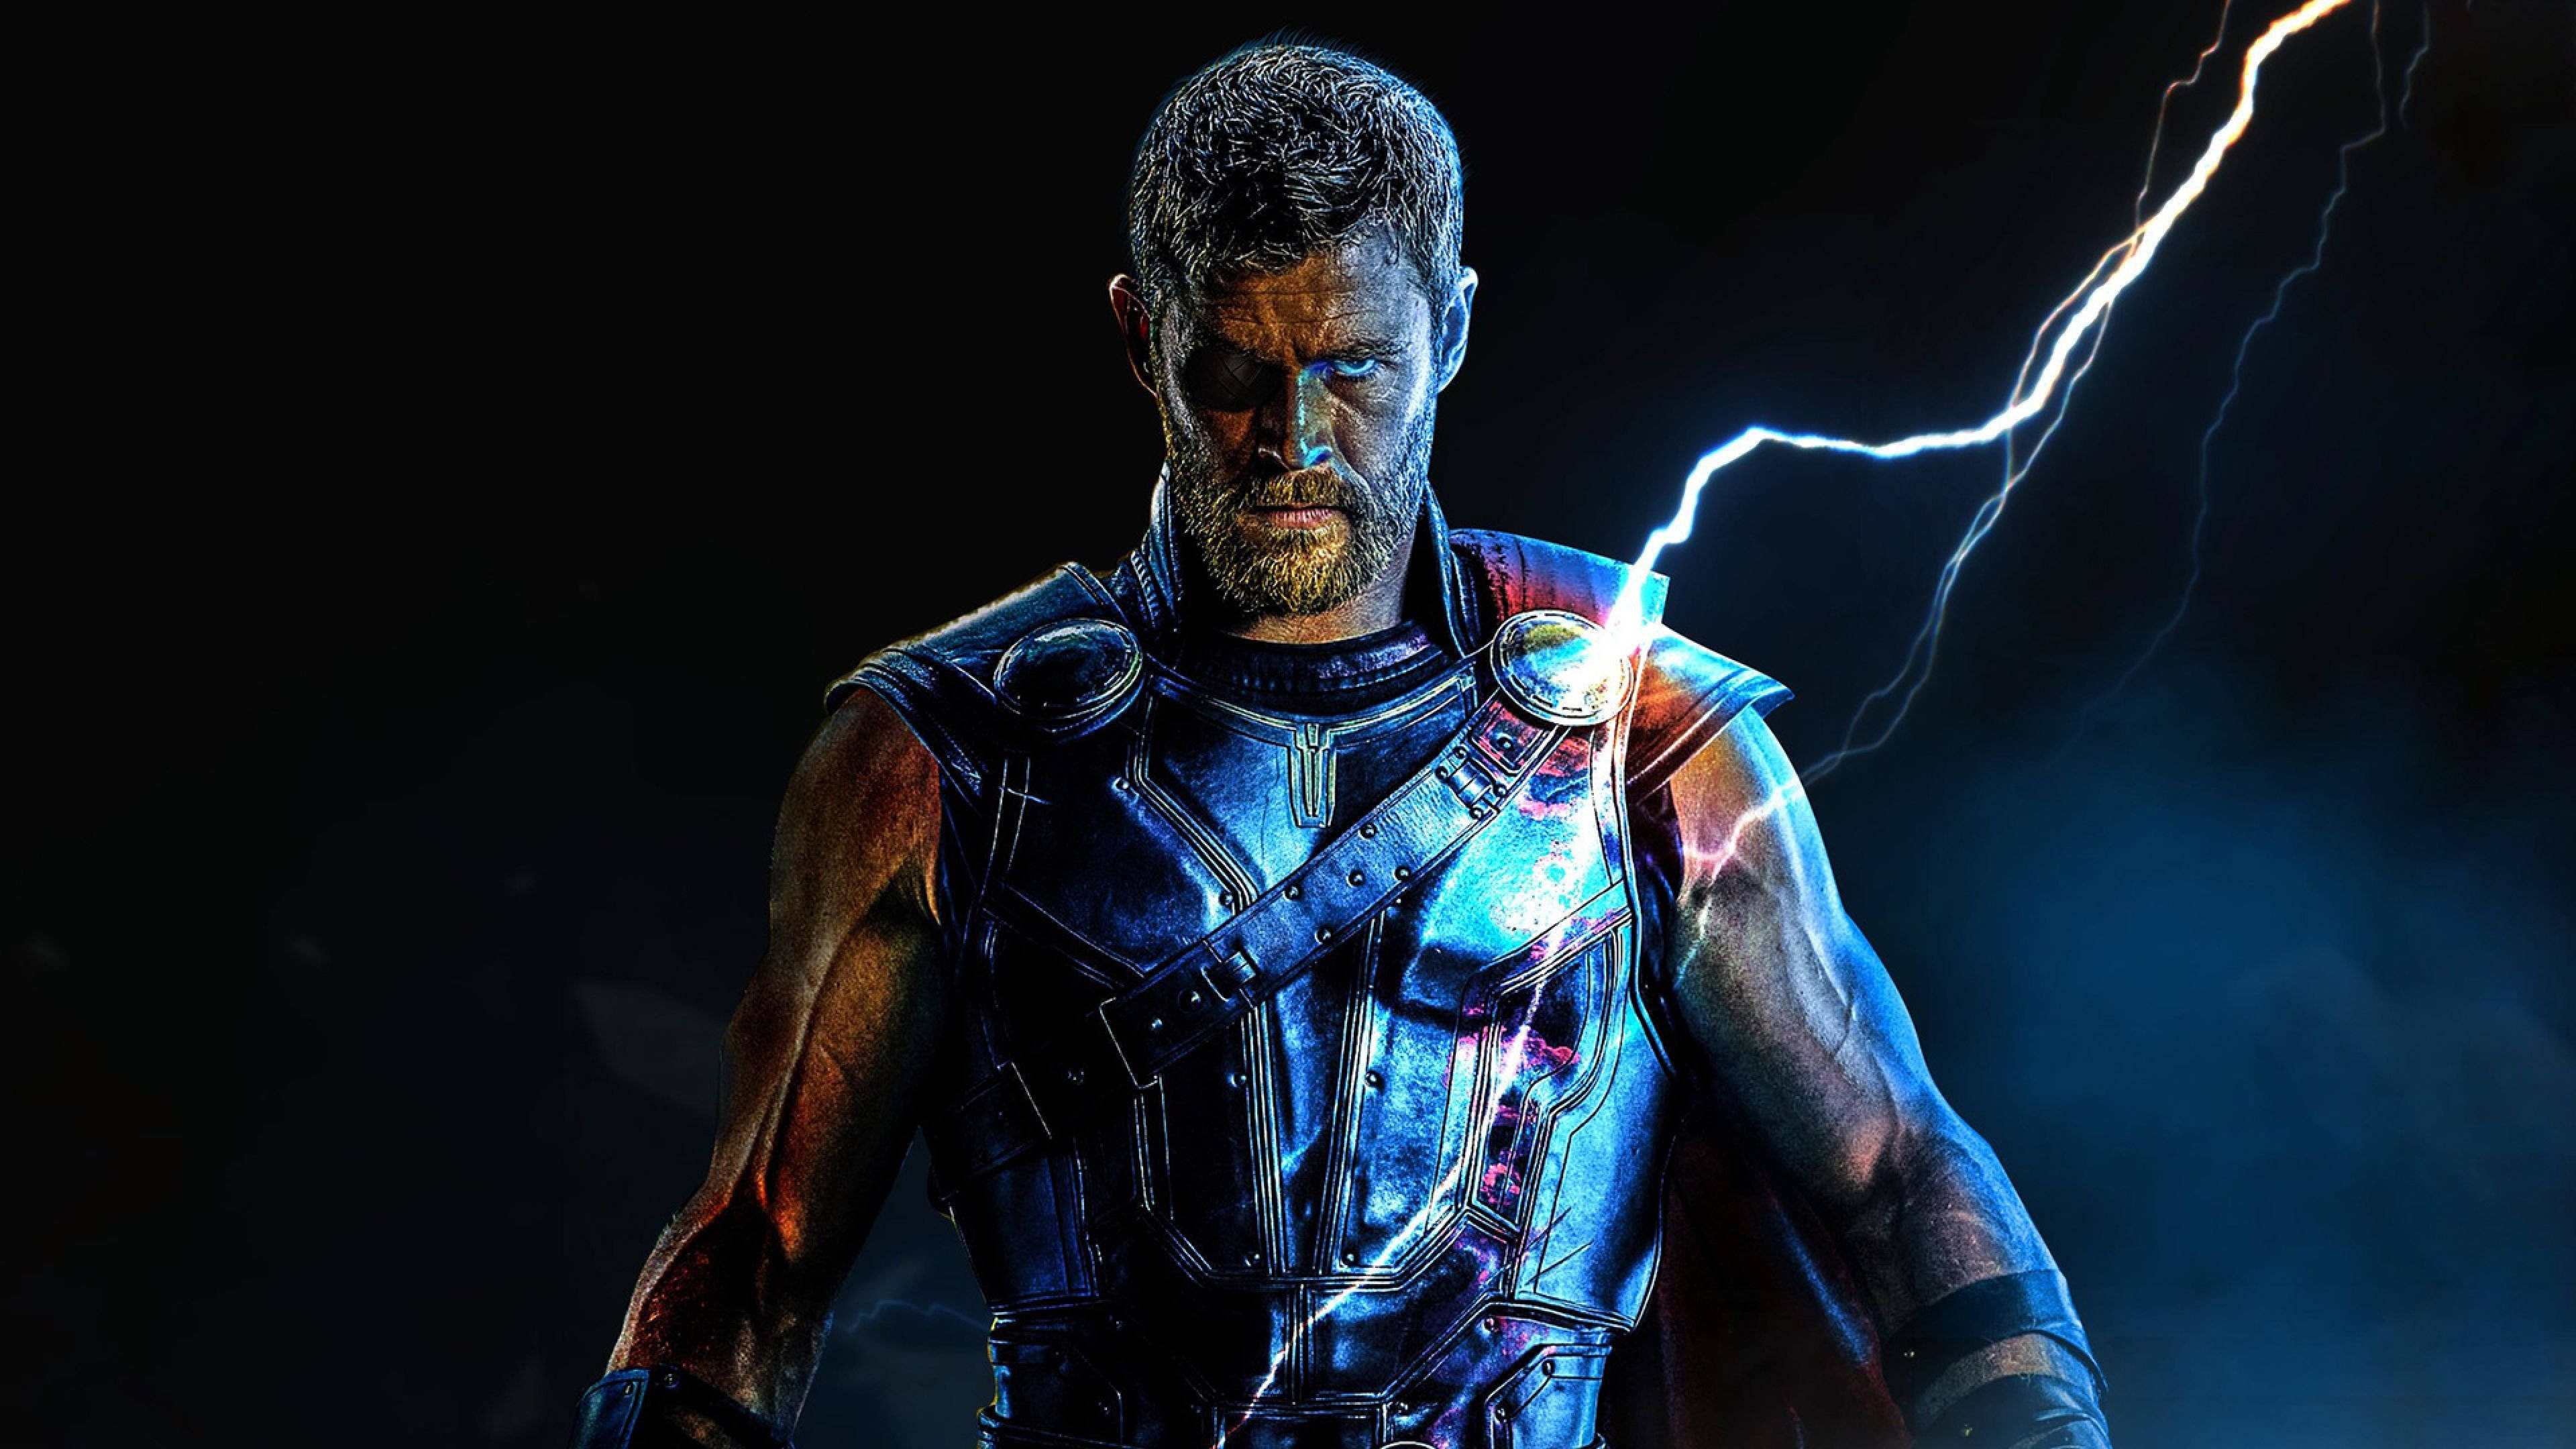 Marvel Hero Thor Stormbreaker Costume Background